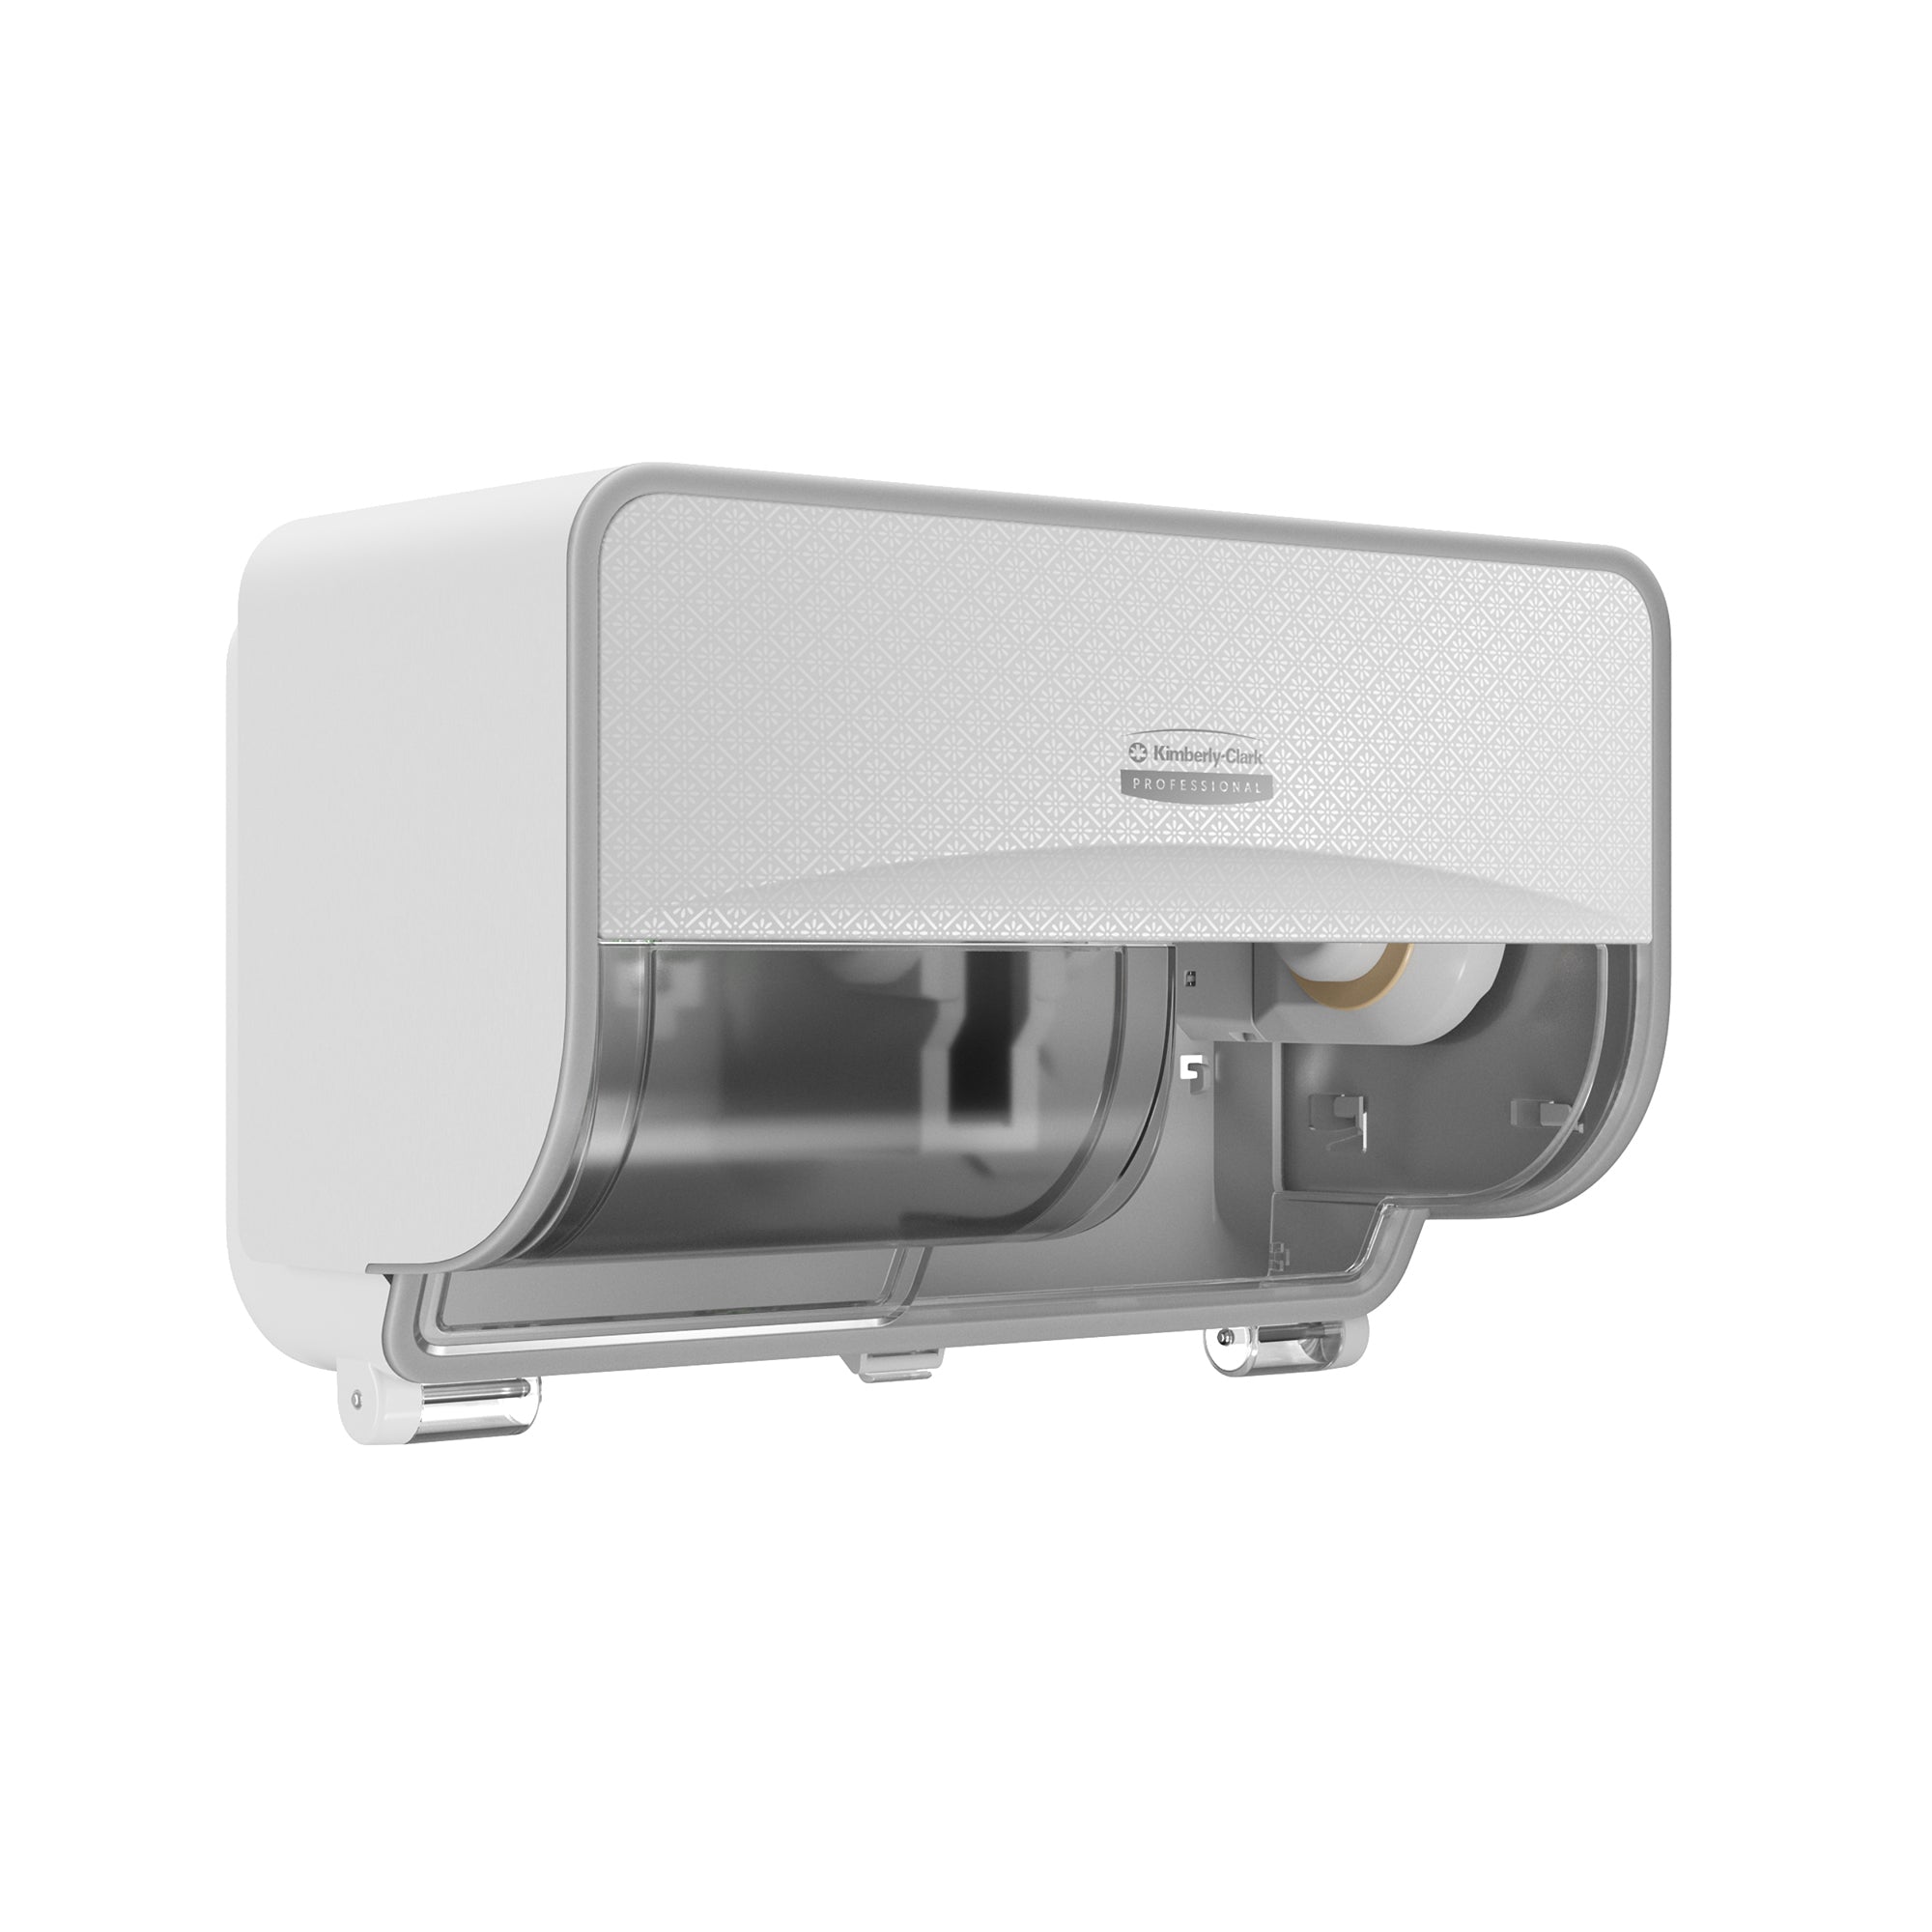 Kimberly-Clark Professional™ ICON™-Standard-Toilettenpapierspender mit 2 horizont. Rollen (53945), mit weißer Blende im Mosaikdesign; 1 Spender und Blende pro Verkaufseinheit